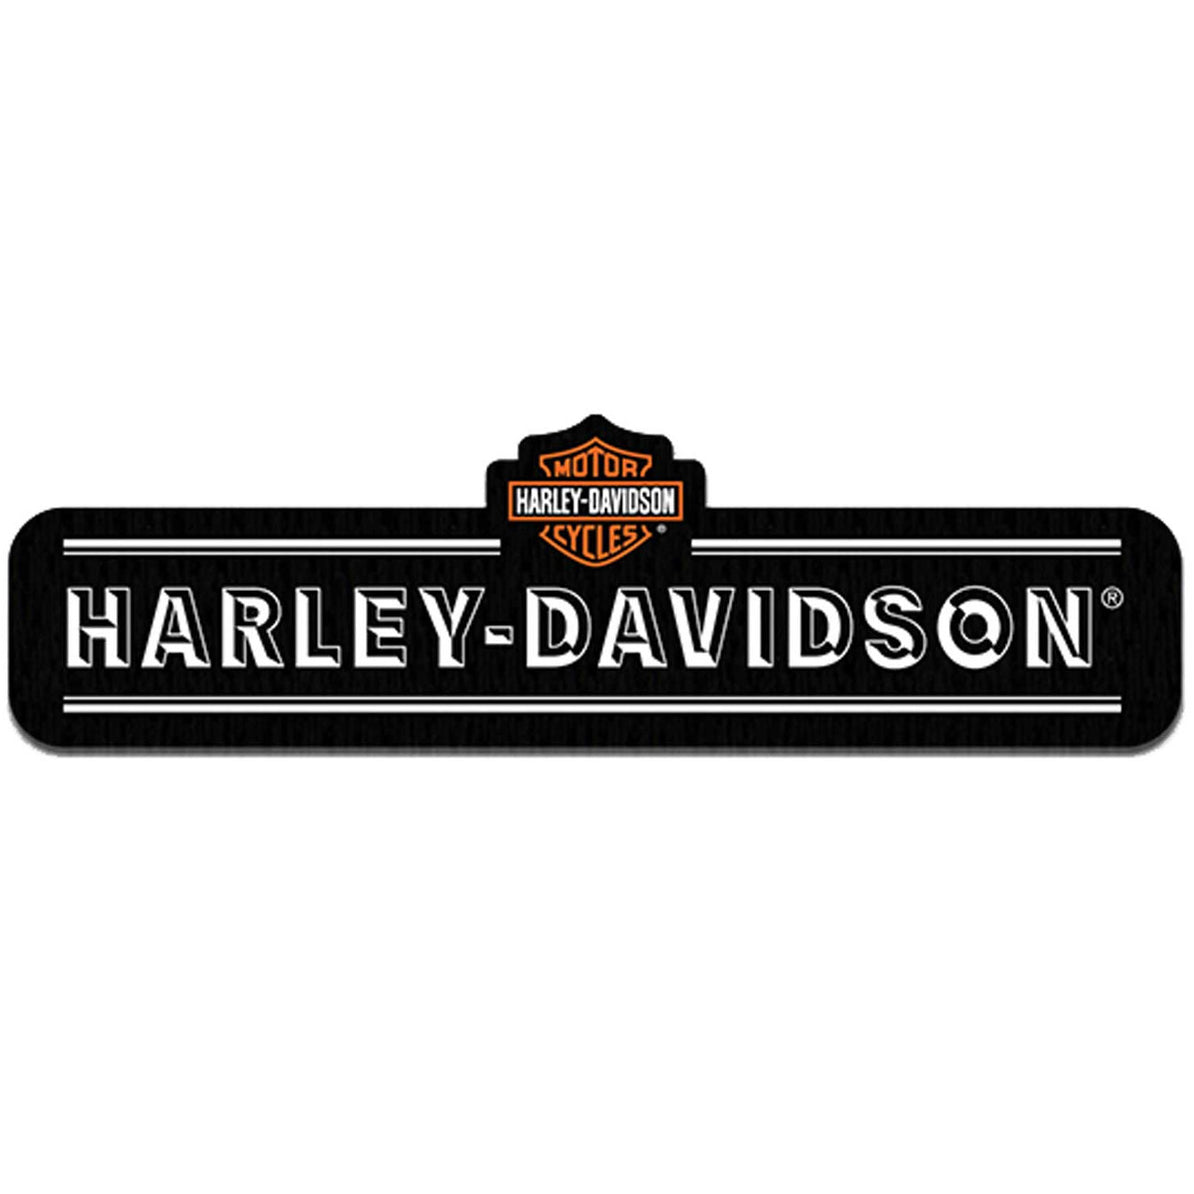 Harley-Davidson Embroidered Edgy Emblem Patch, 8 x 6, Black & Burgundy EM321364, Size: Large, BlackBurgundy